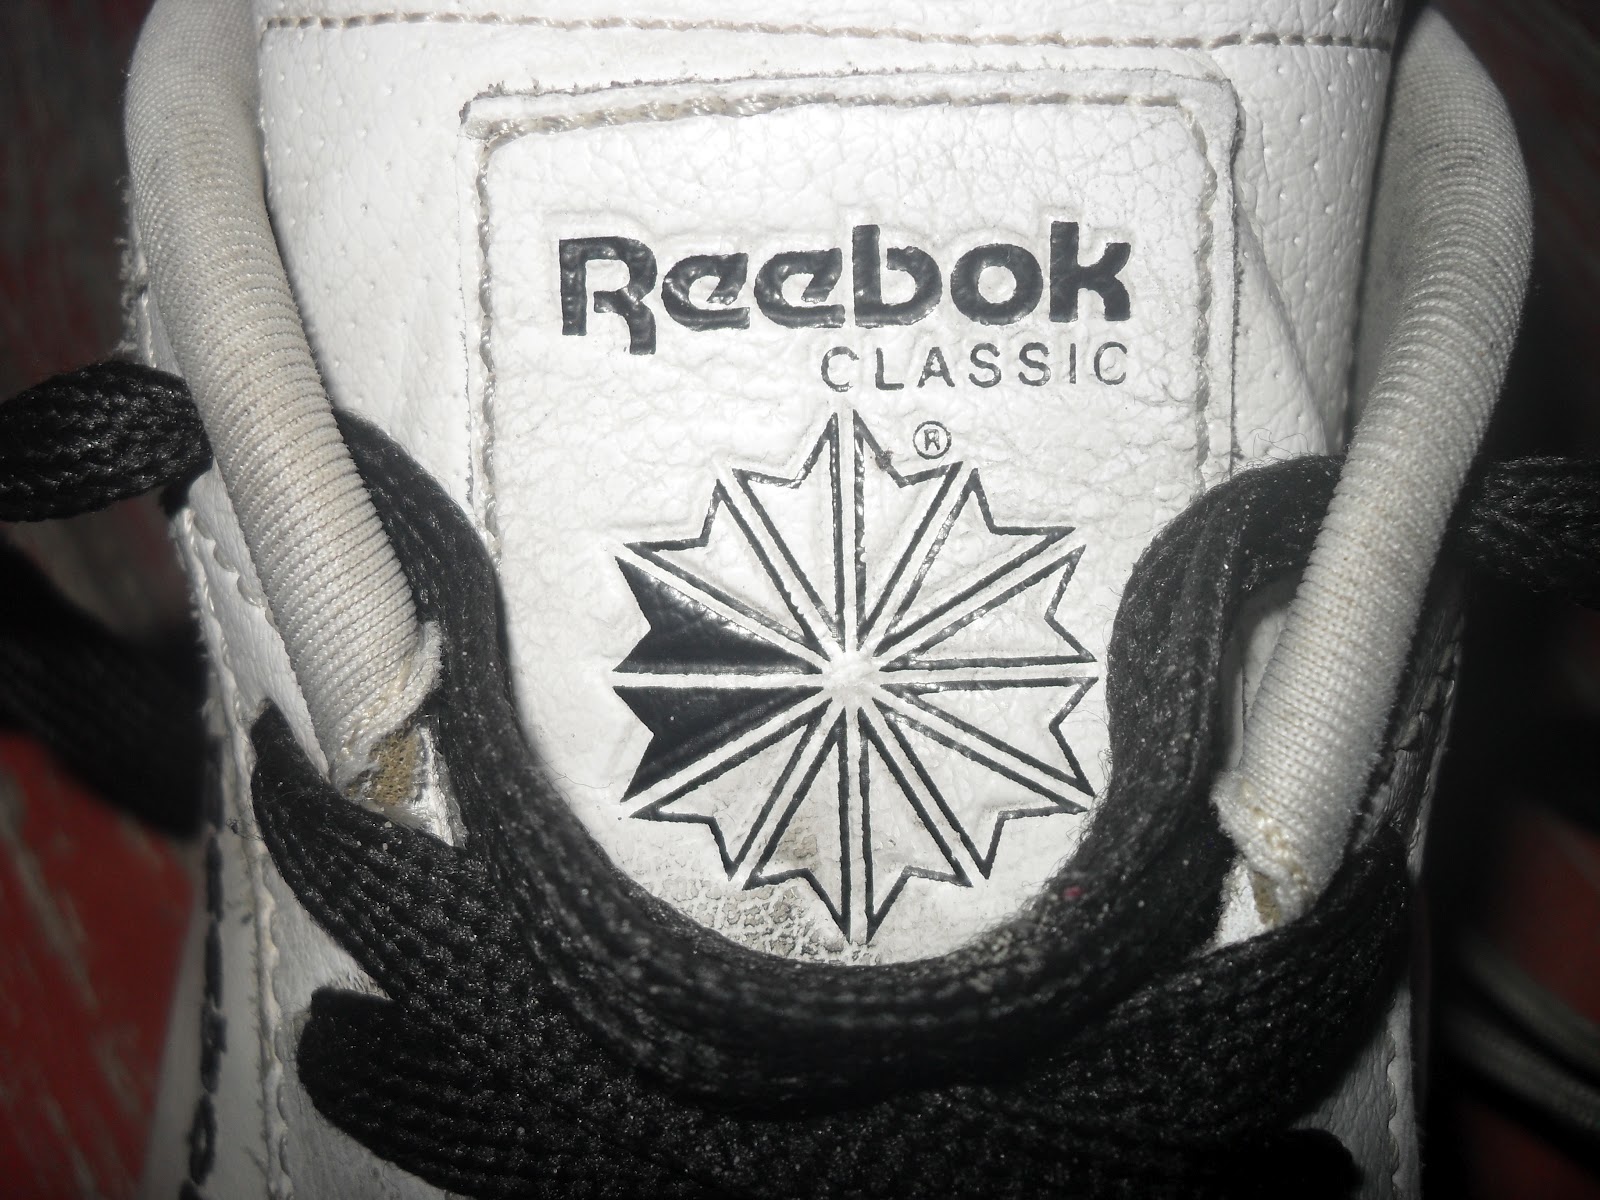 original reebok shoes made from where